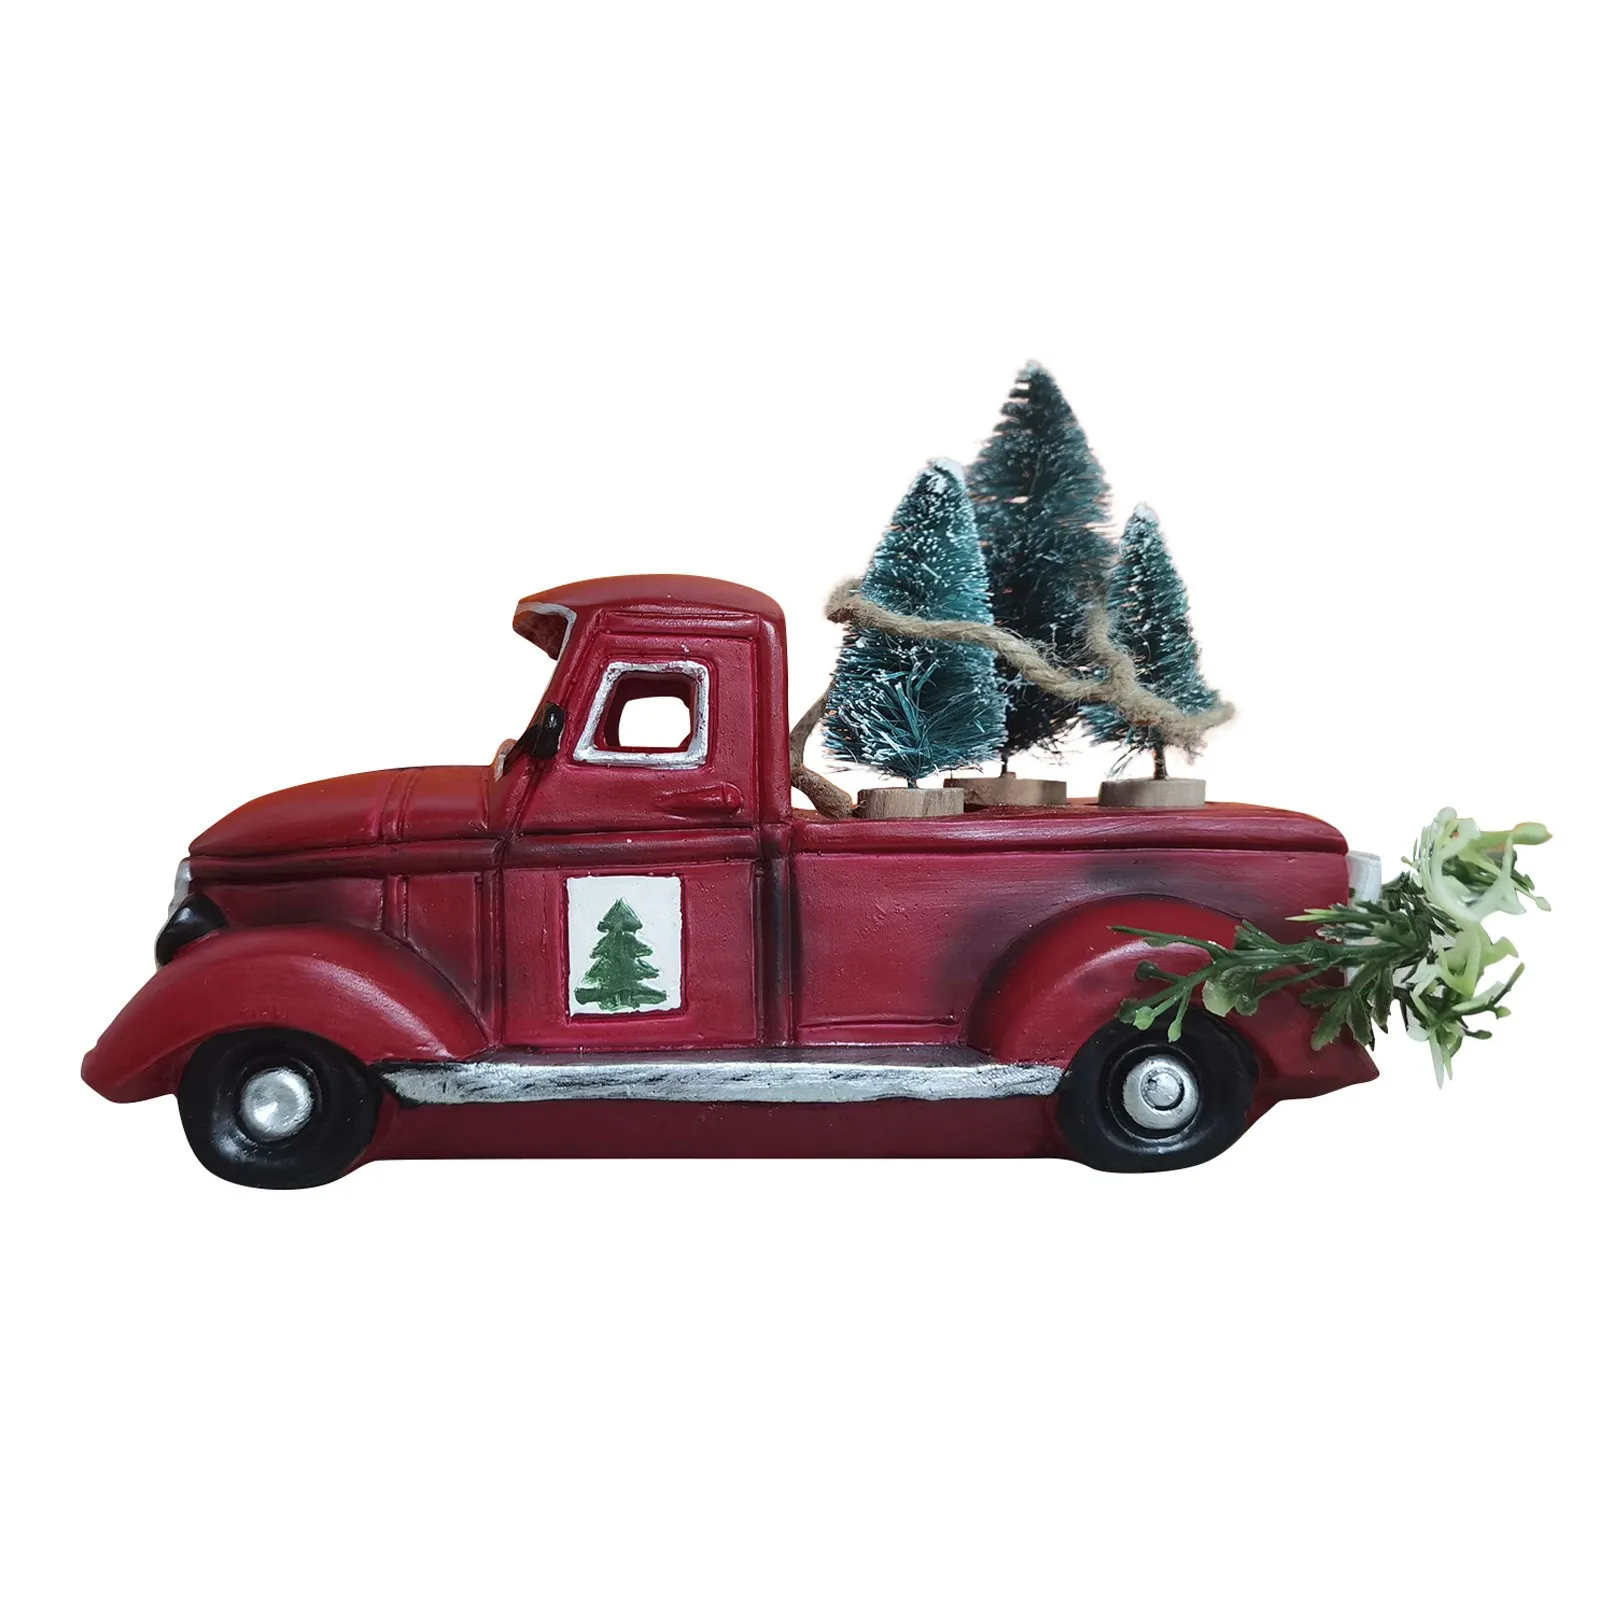 stile vintage con letto stile industriale circa 45,7 cm giftland Camion per pickup rustico in metallo rosso con albero di Natale decorazione retrò chic 